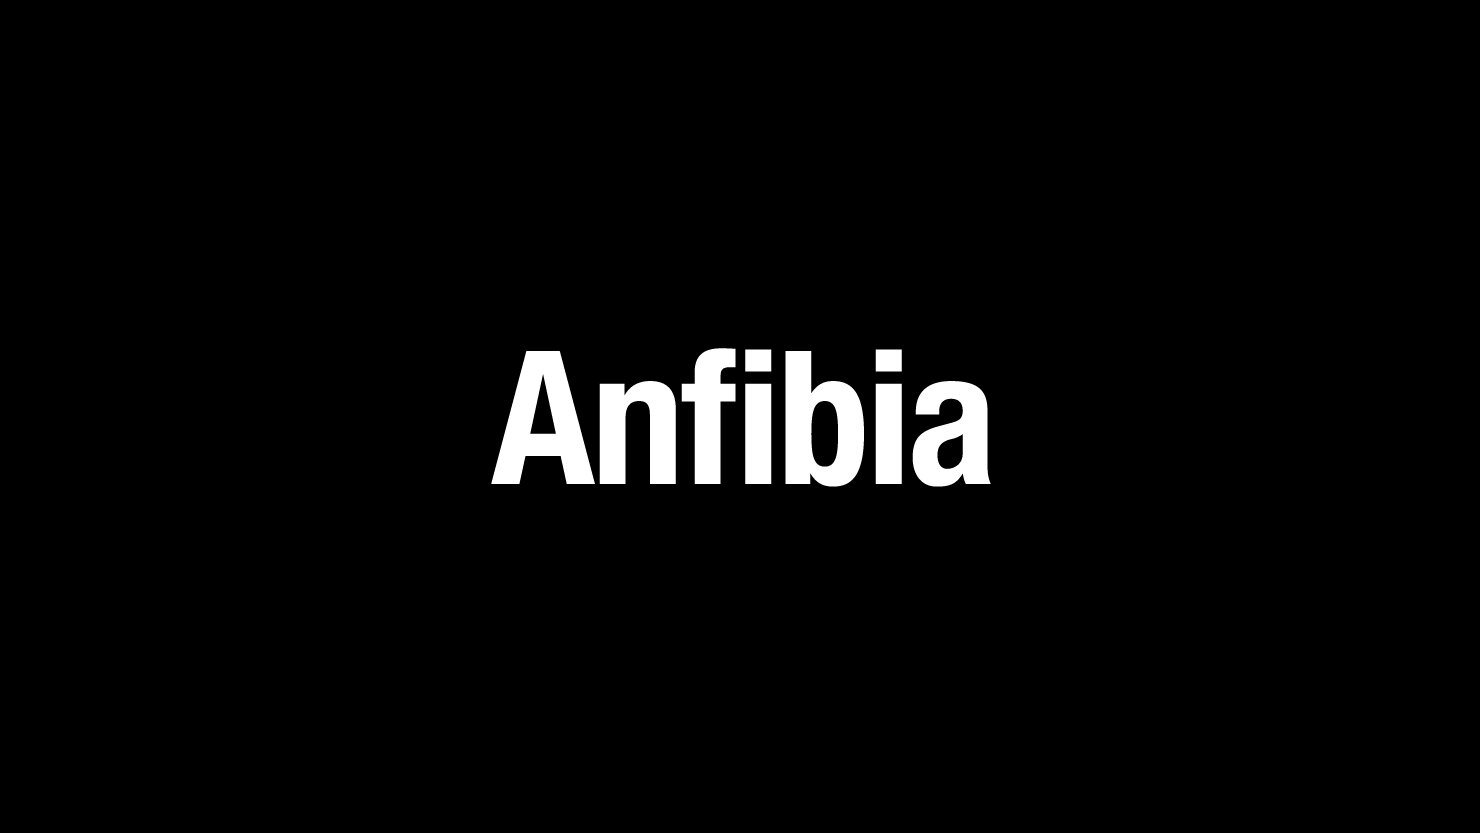 Anfibia_Calendar_Branding_02.jpg